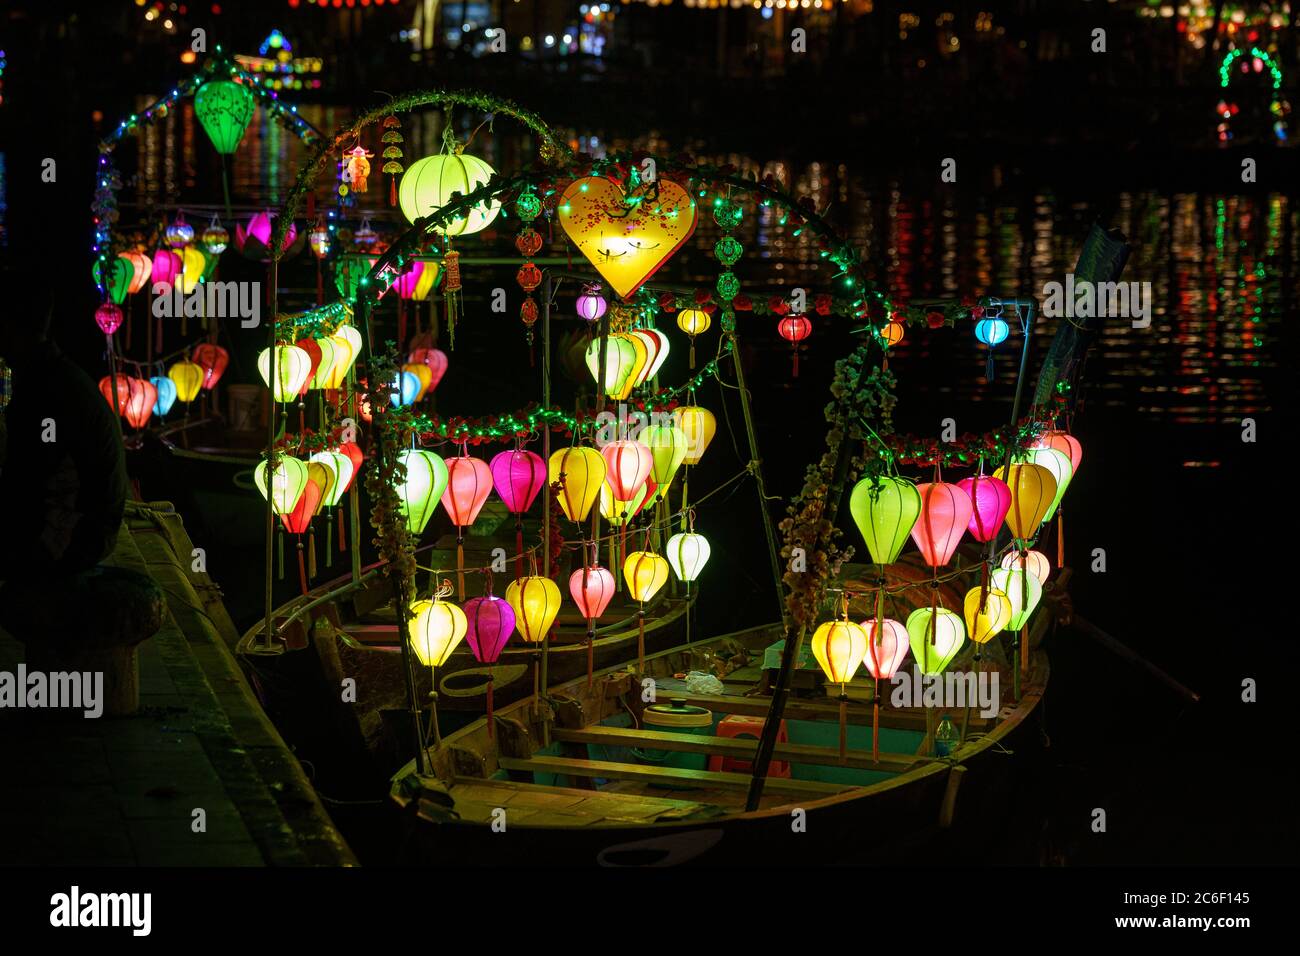 Asiatisches Boot mit farbigen chinesischen Laternen, die nachts im Wasser sein Licht reflektieren Stockfoto